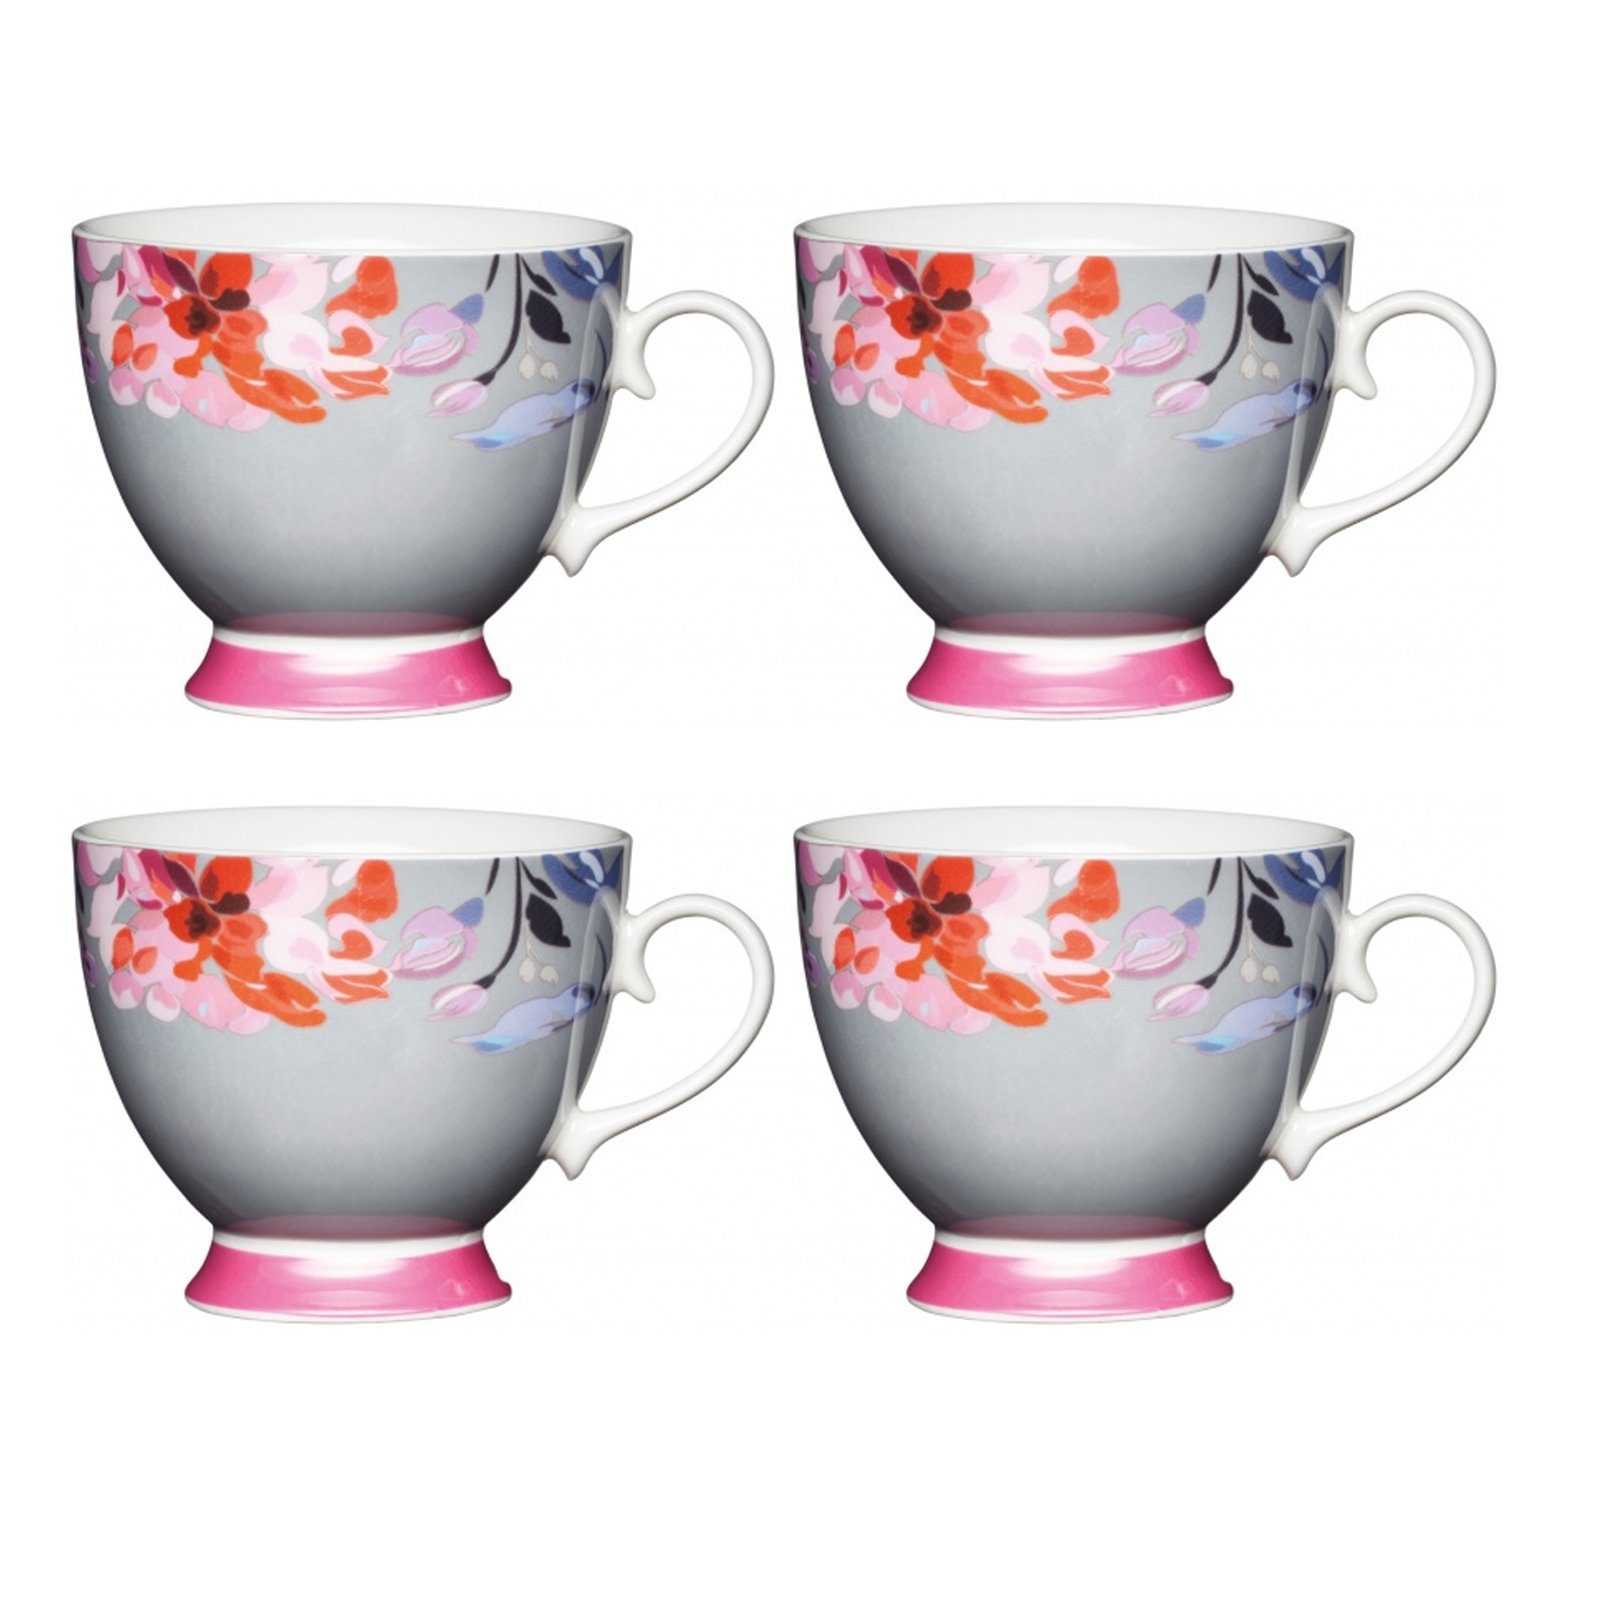 Neuetischkultur Tasse Tassen-Set, 4-teilig, geschwungene Form, Porzellan Blumendekor Grau